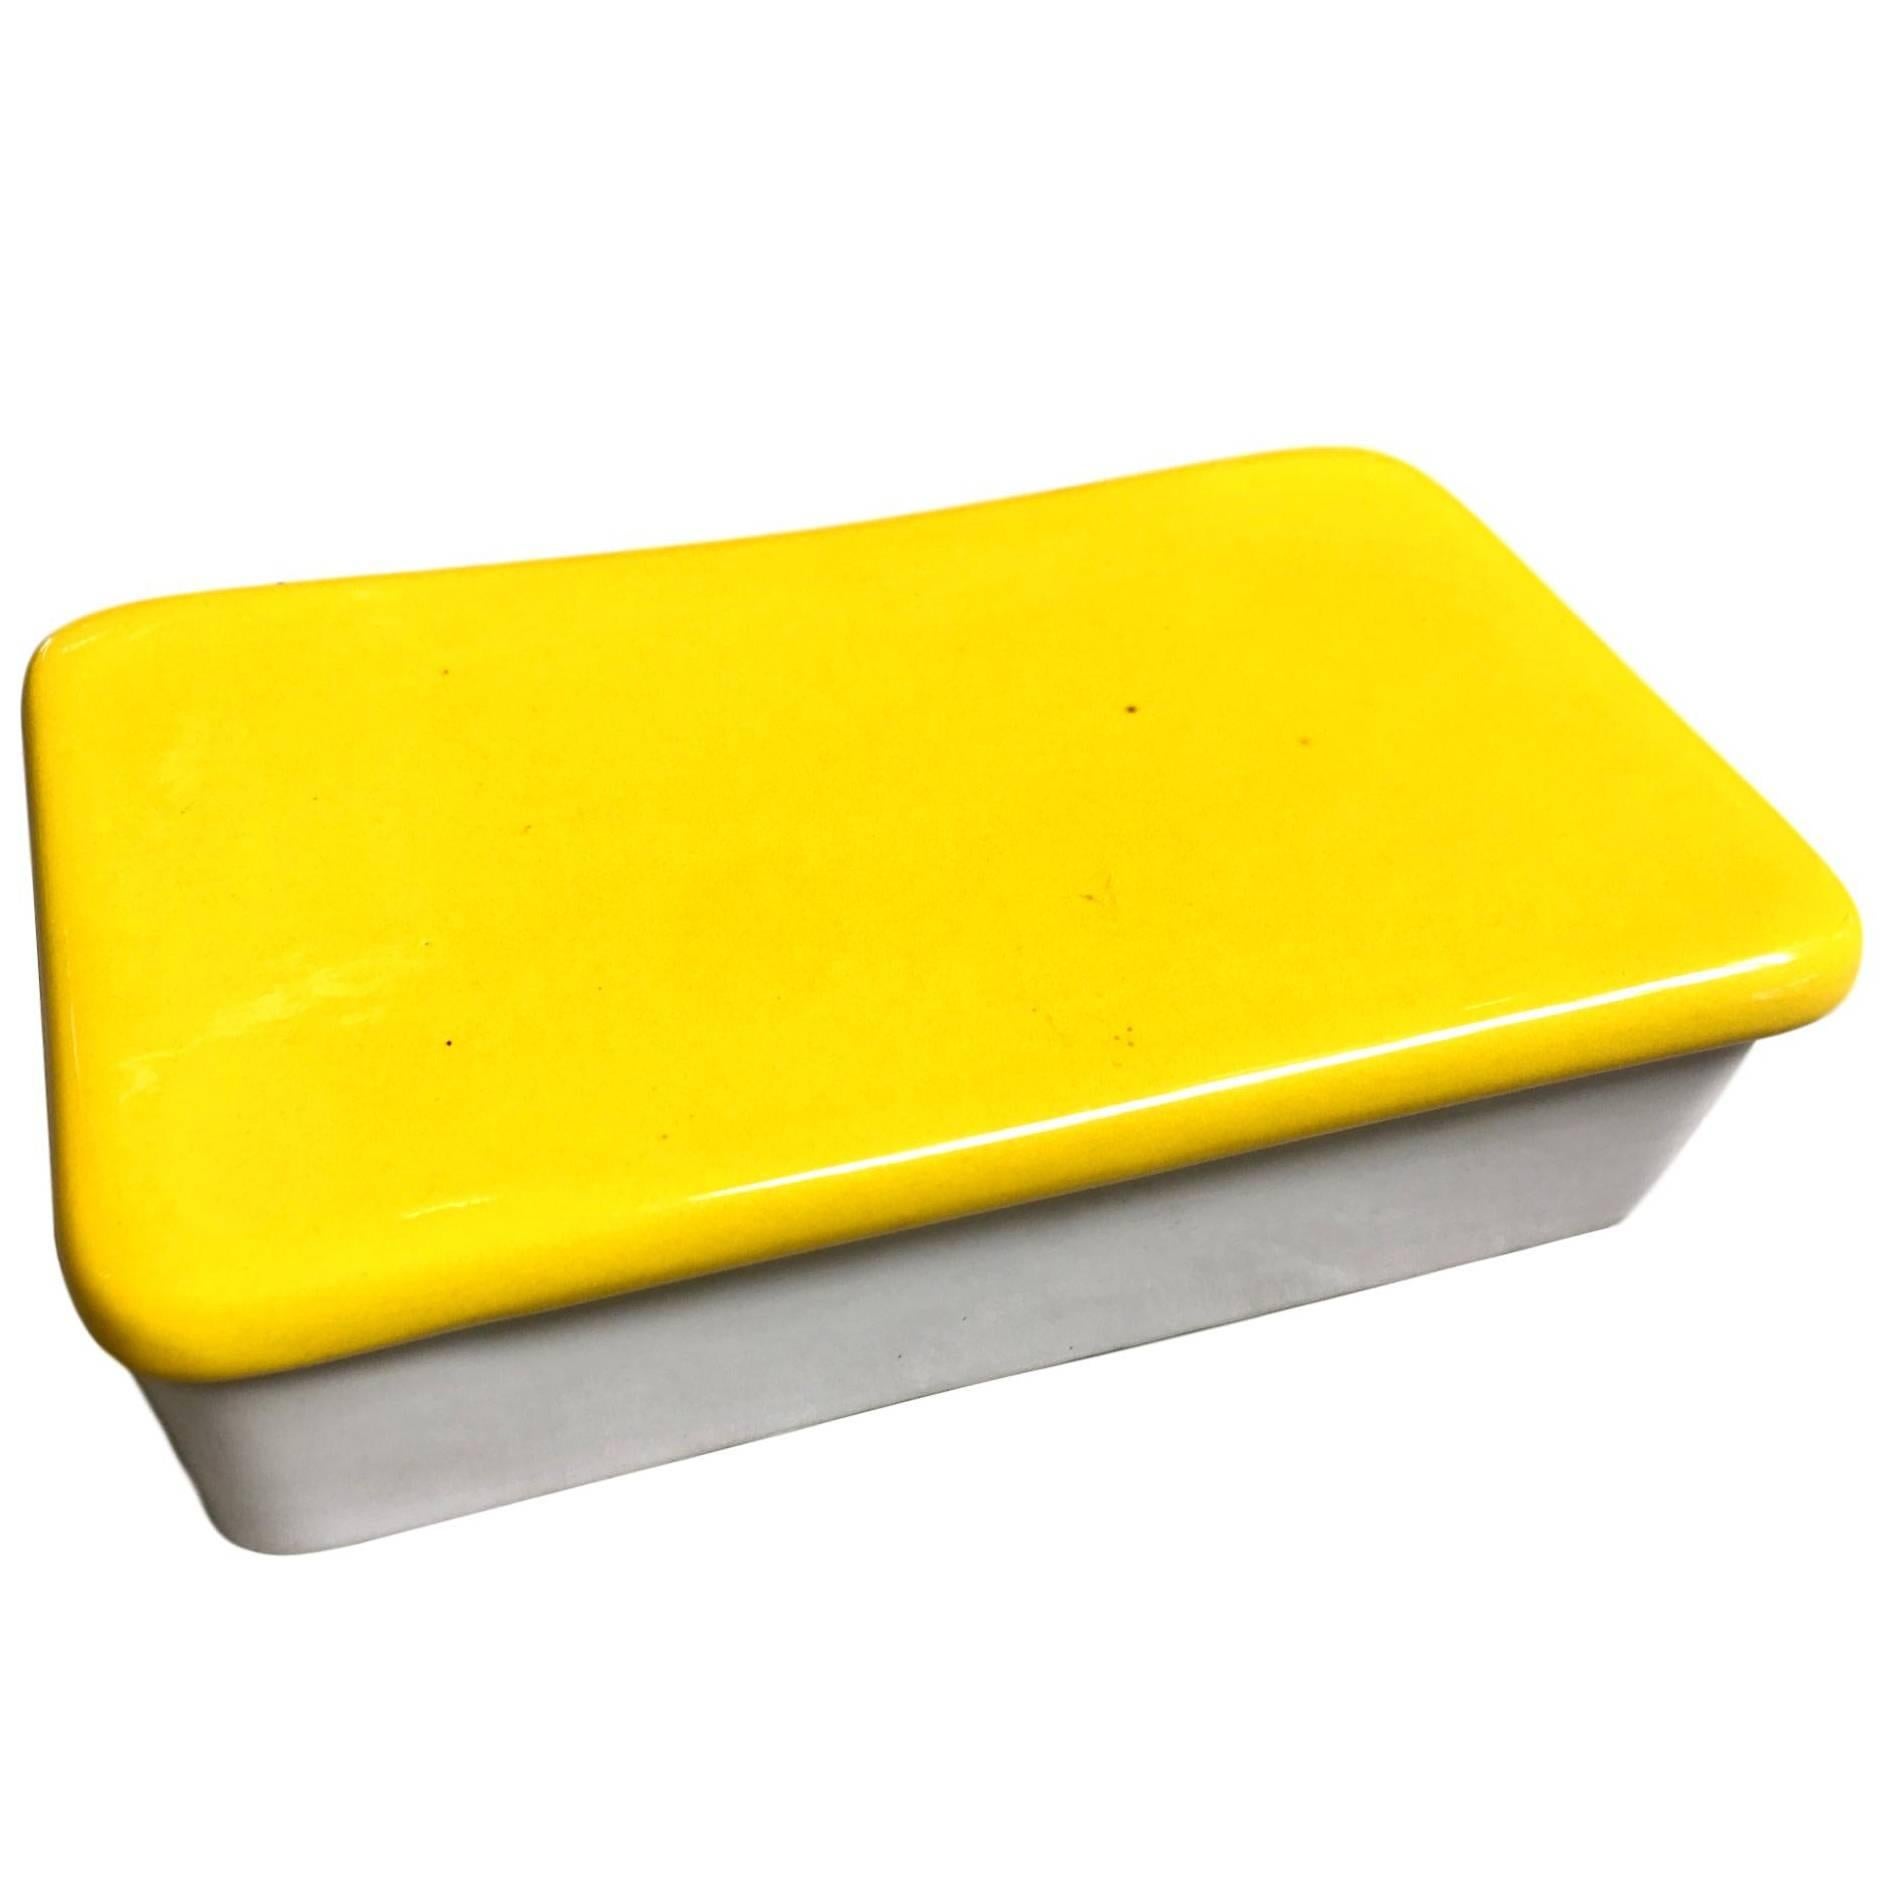 Raymor Yellow and White Ceramic Box